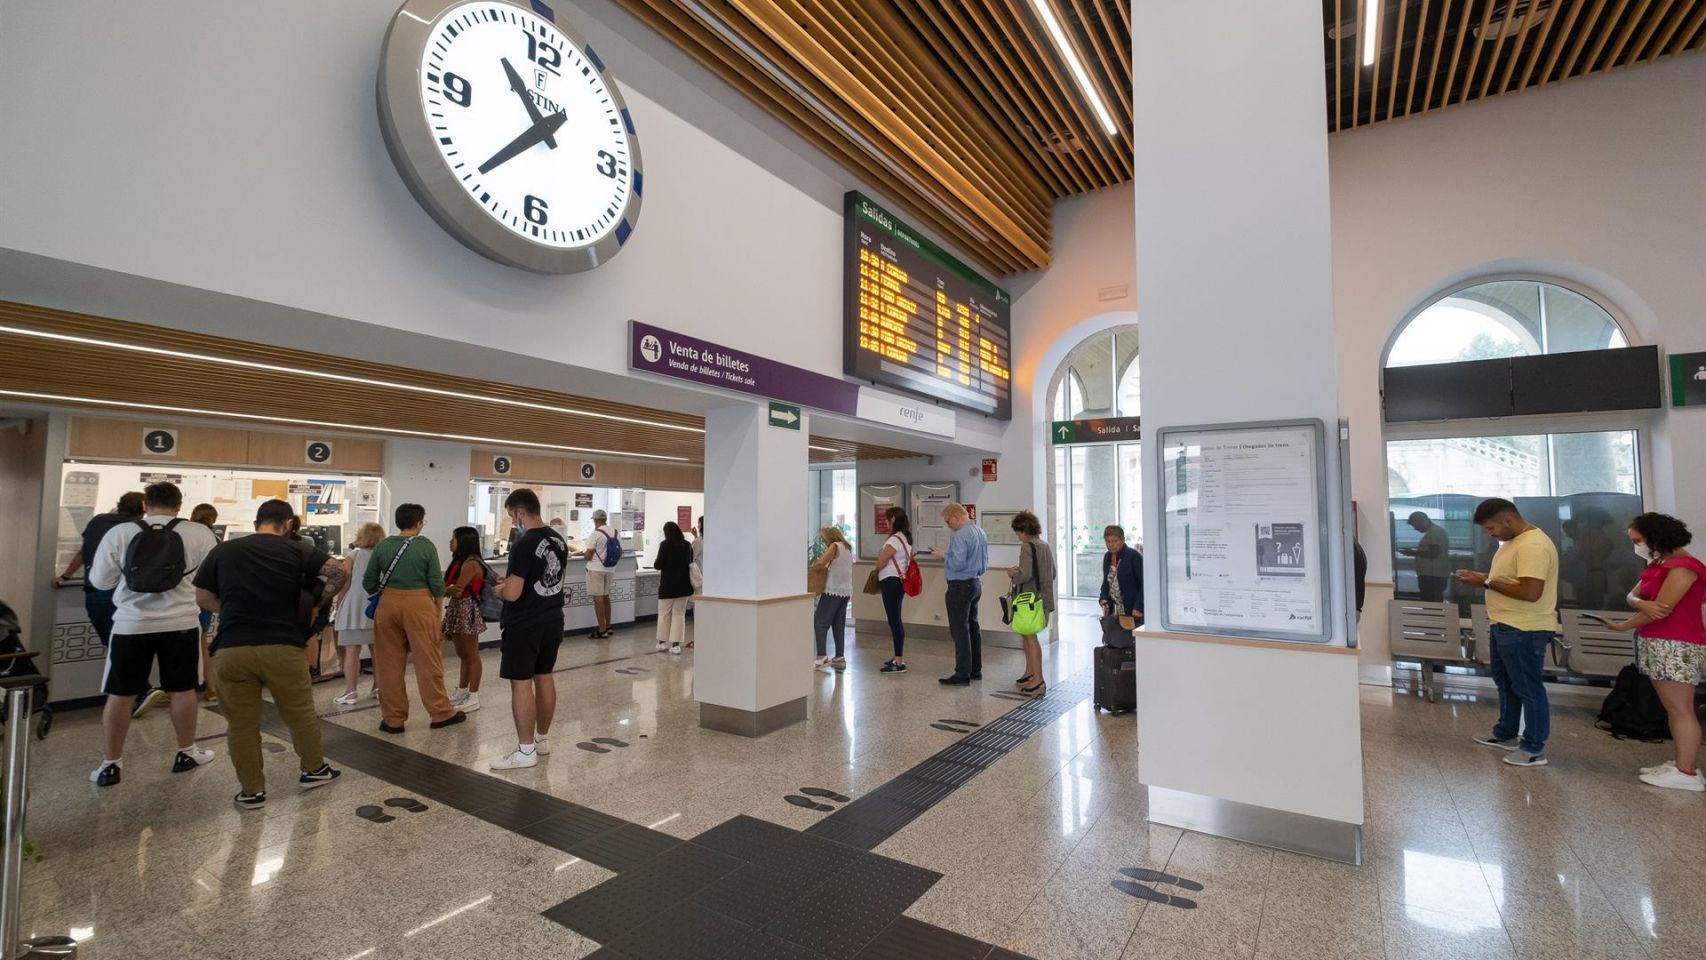 Varias personas hacen cola para adquirir un abono gratuito en la estación de trenes, a 24 de agosto de 2022.